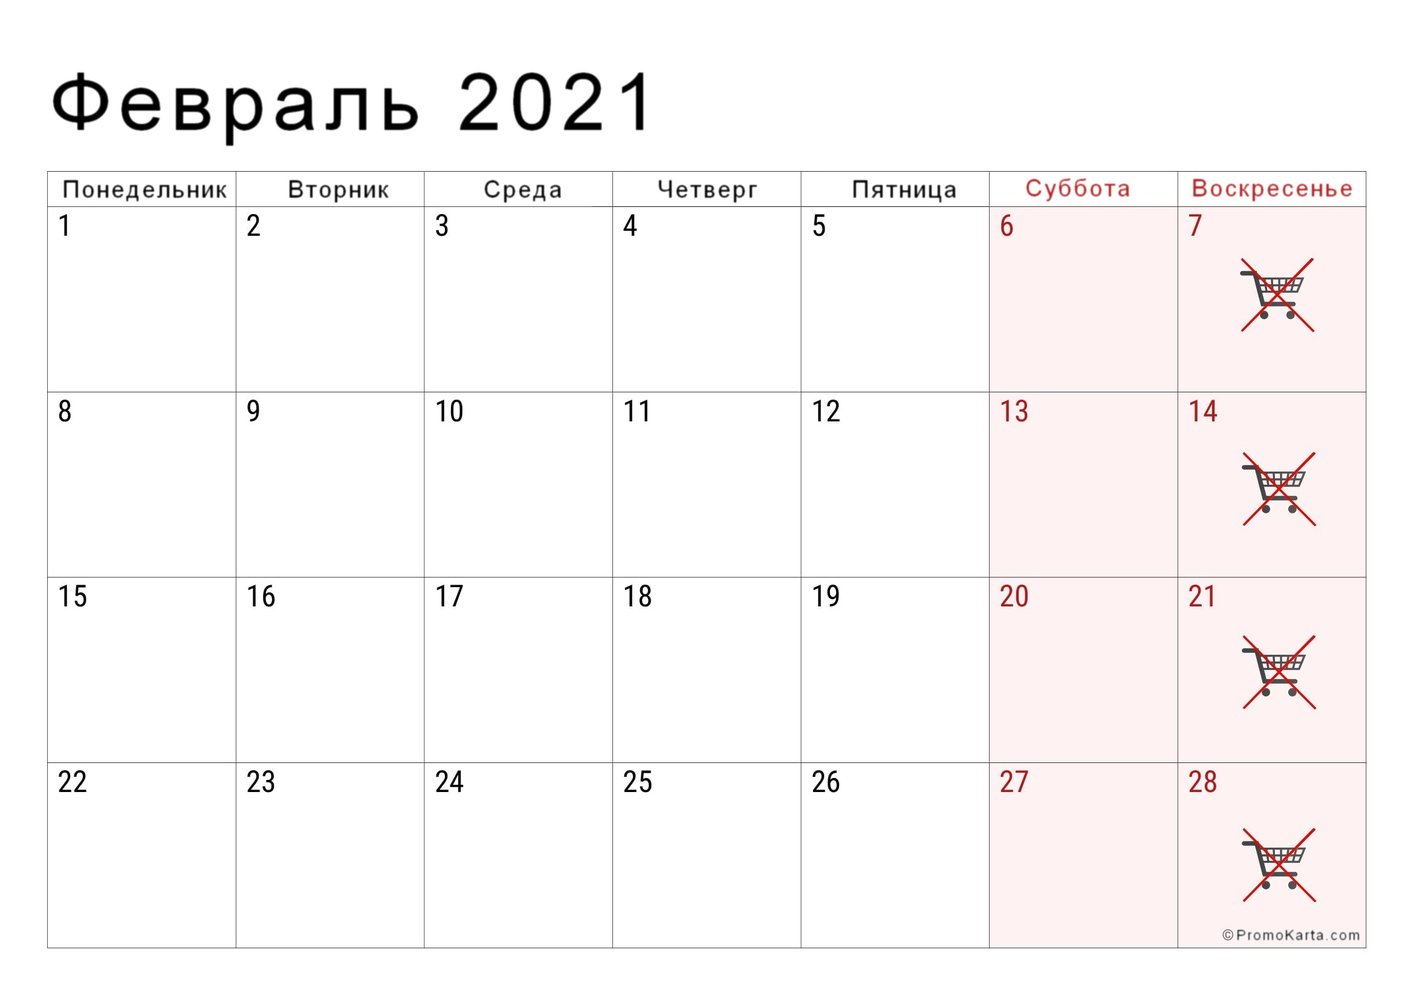 Выходные и неторговые дни в Польше в феврале 2021 года